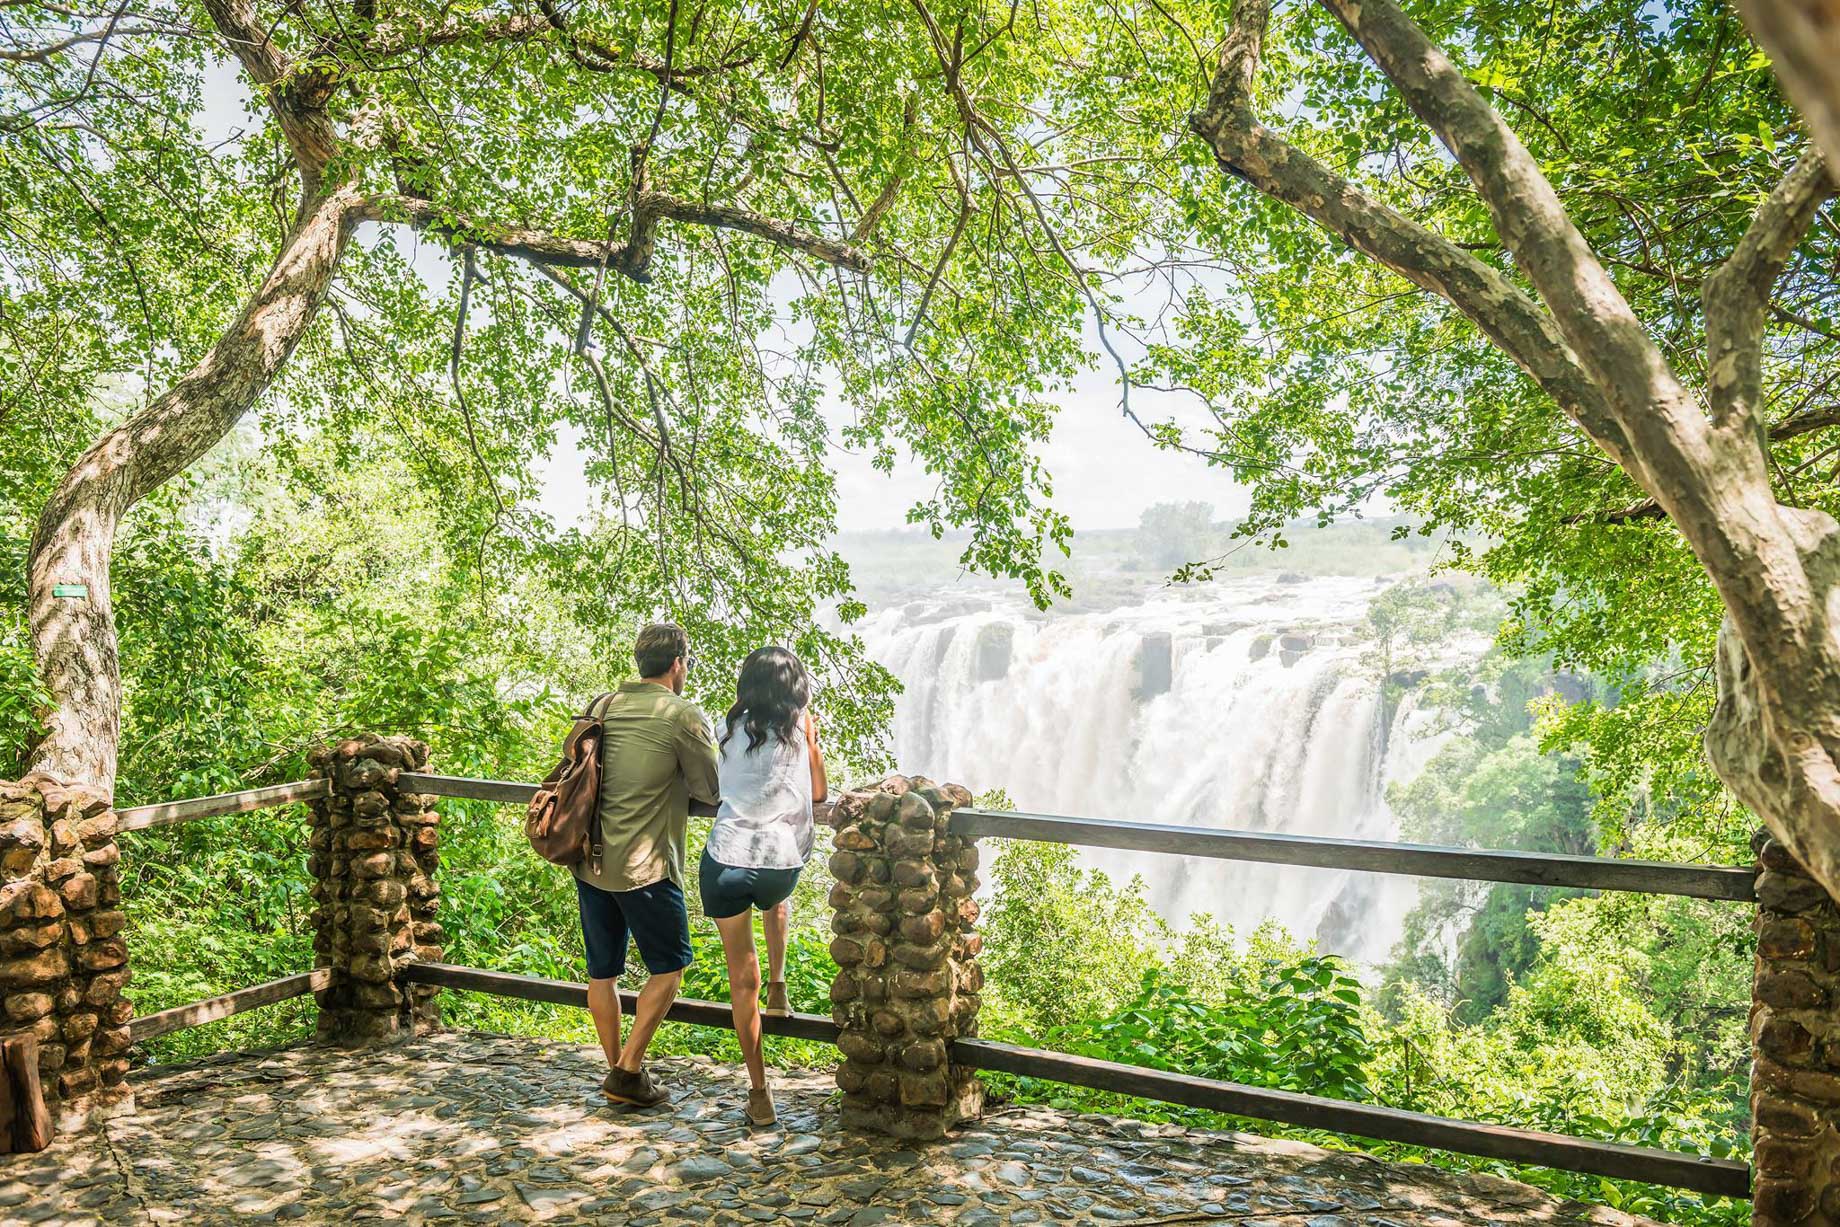 Avani Victoria Falls Resort – Livingstone, Zambia – Victoria Falls Viewpoint